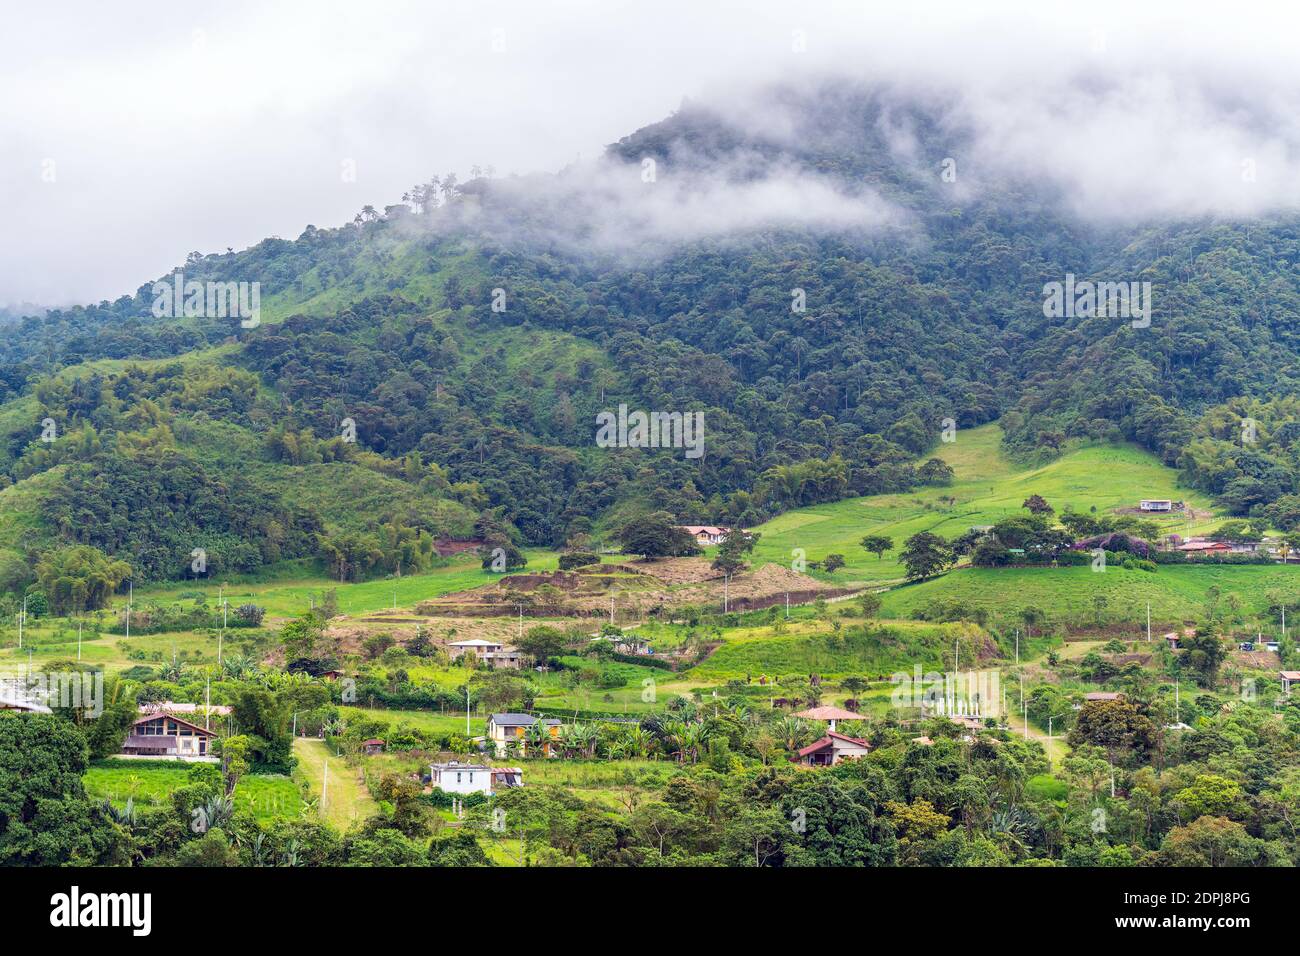 Landscape and cityscape of Mindo near Quito, Ecuador. Stock Photo